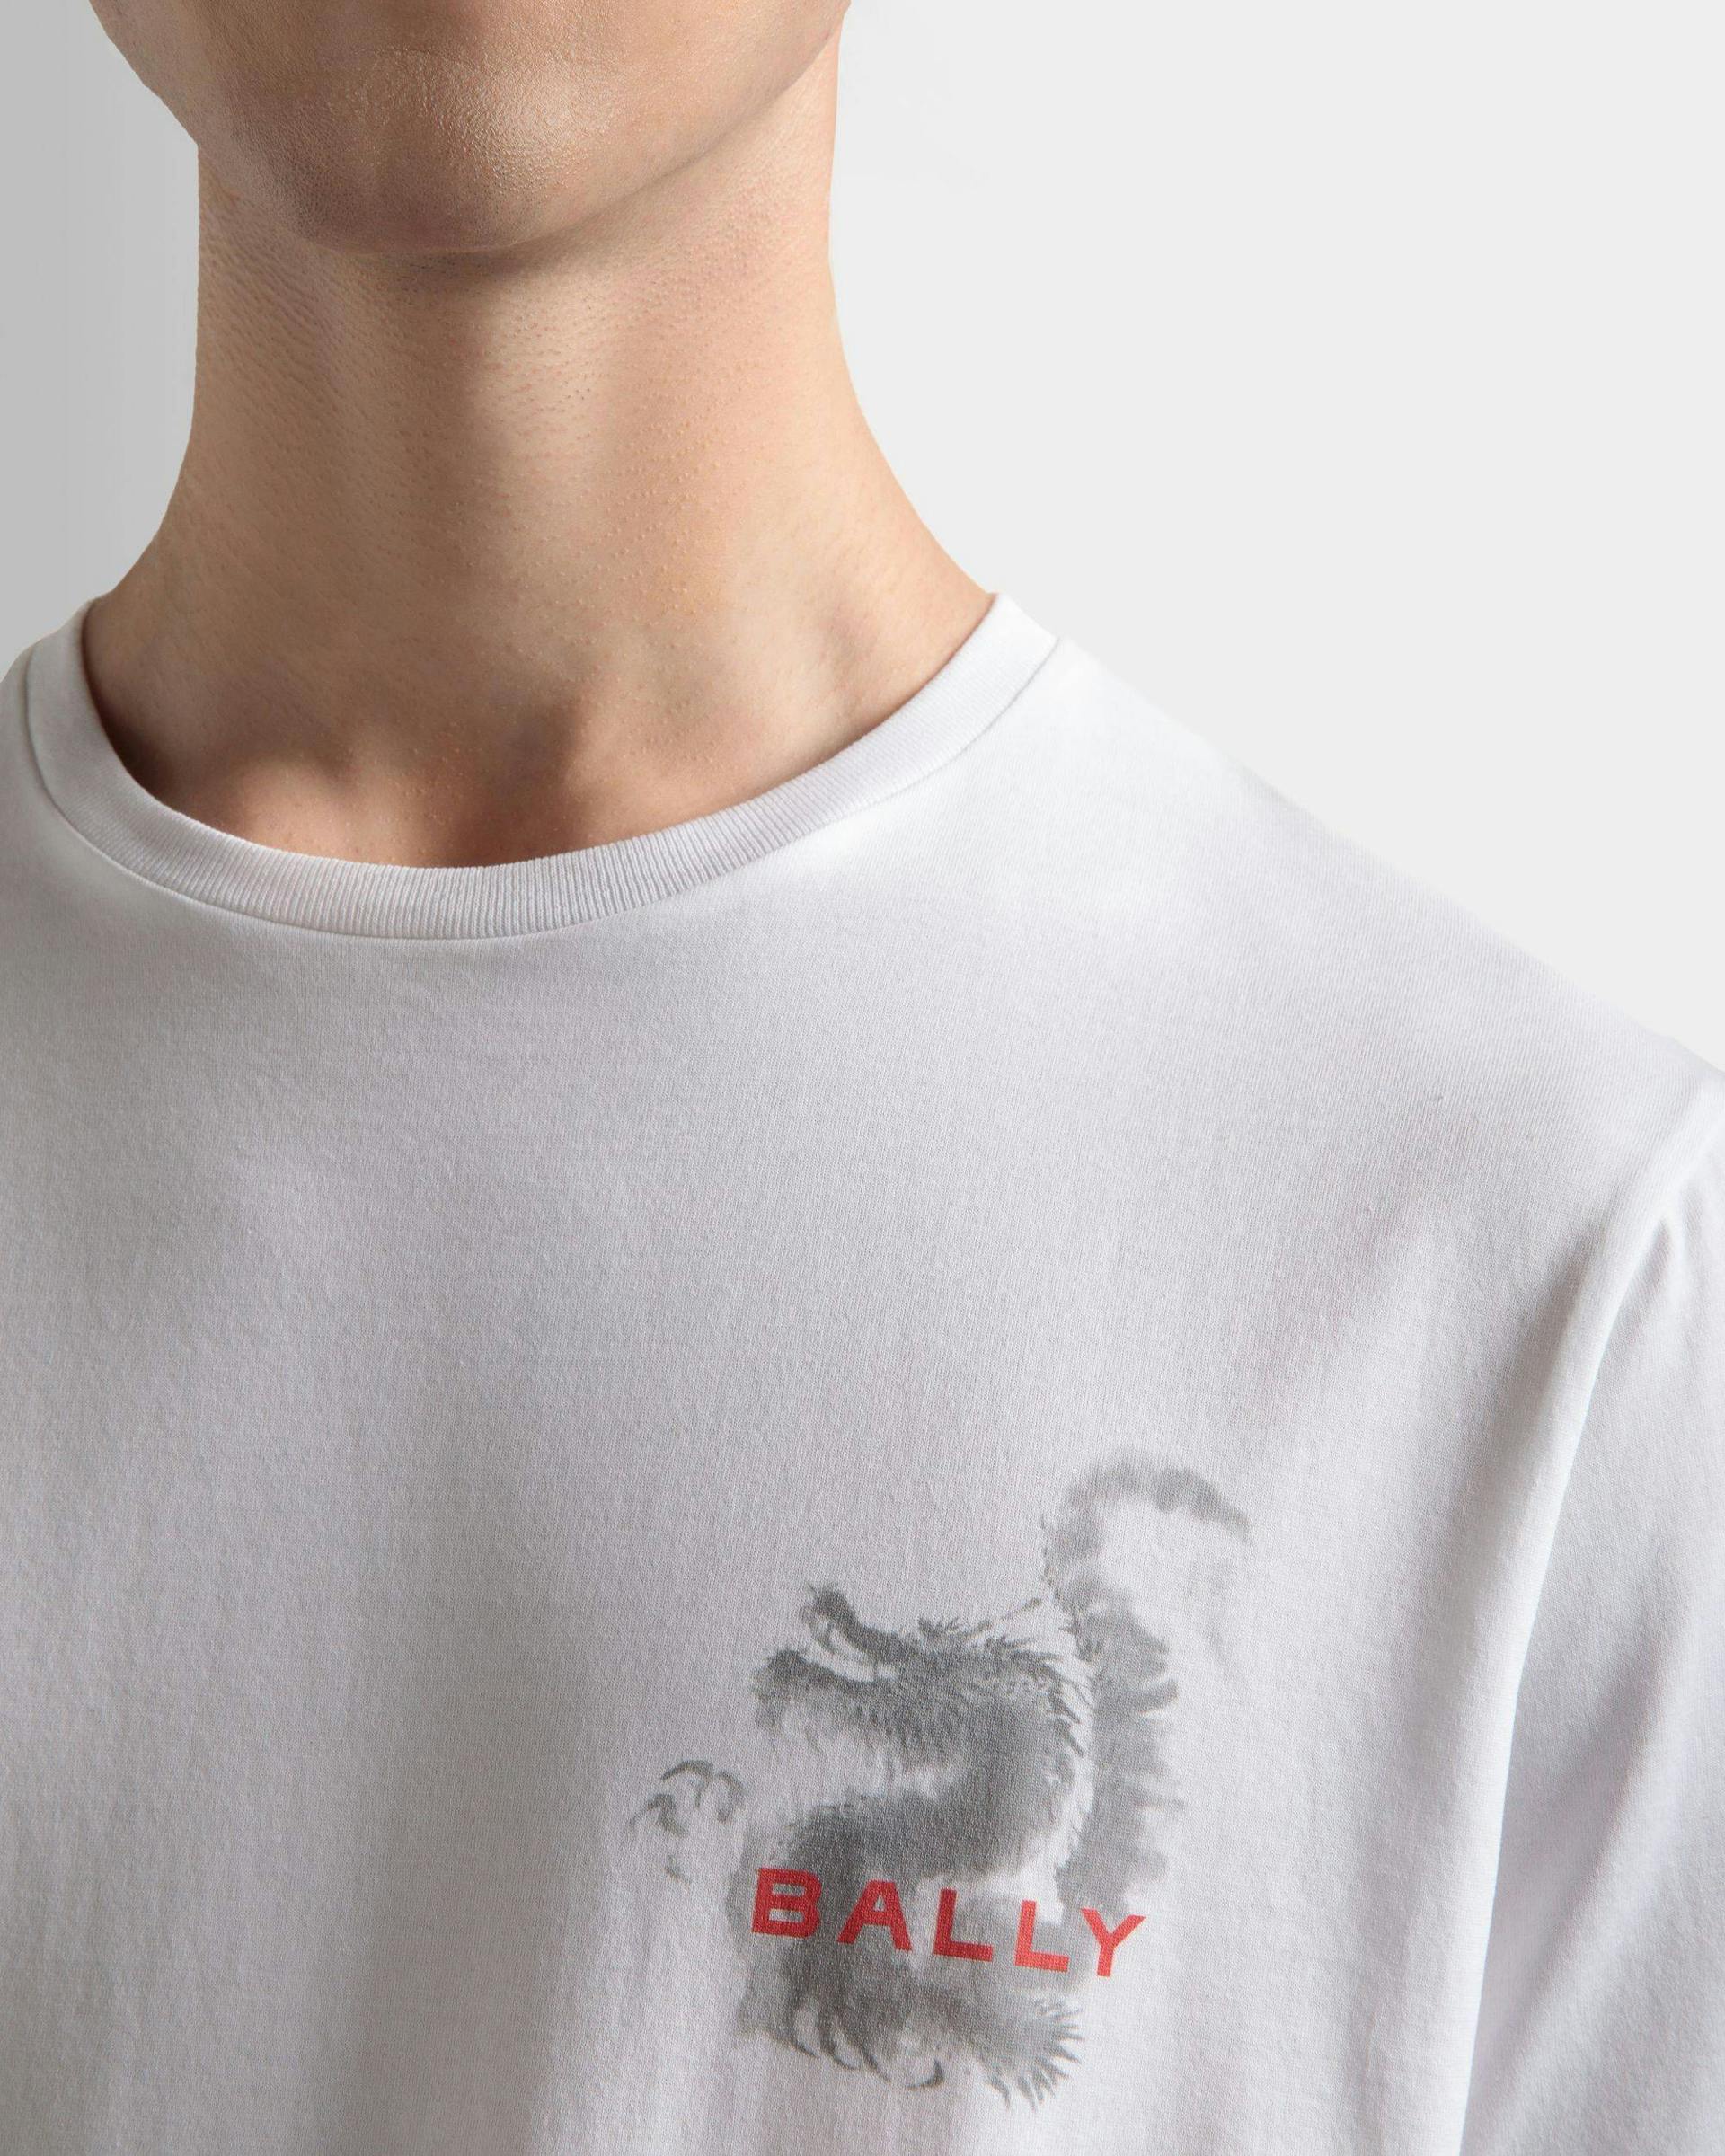 Men's T-Shirt In White Cotton | Bally | On Model Detail